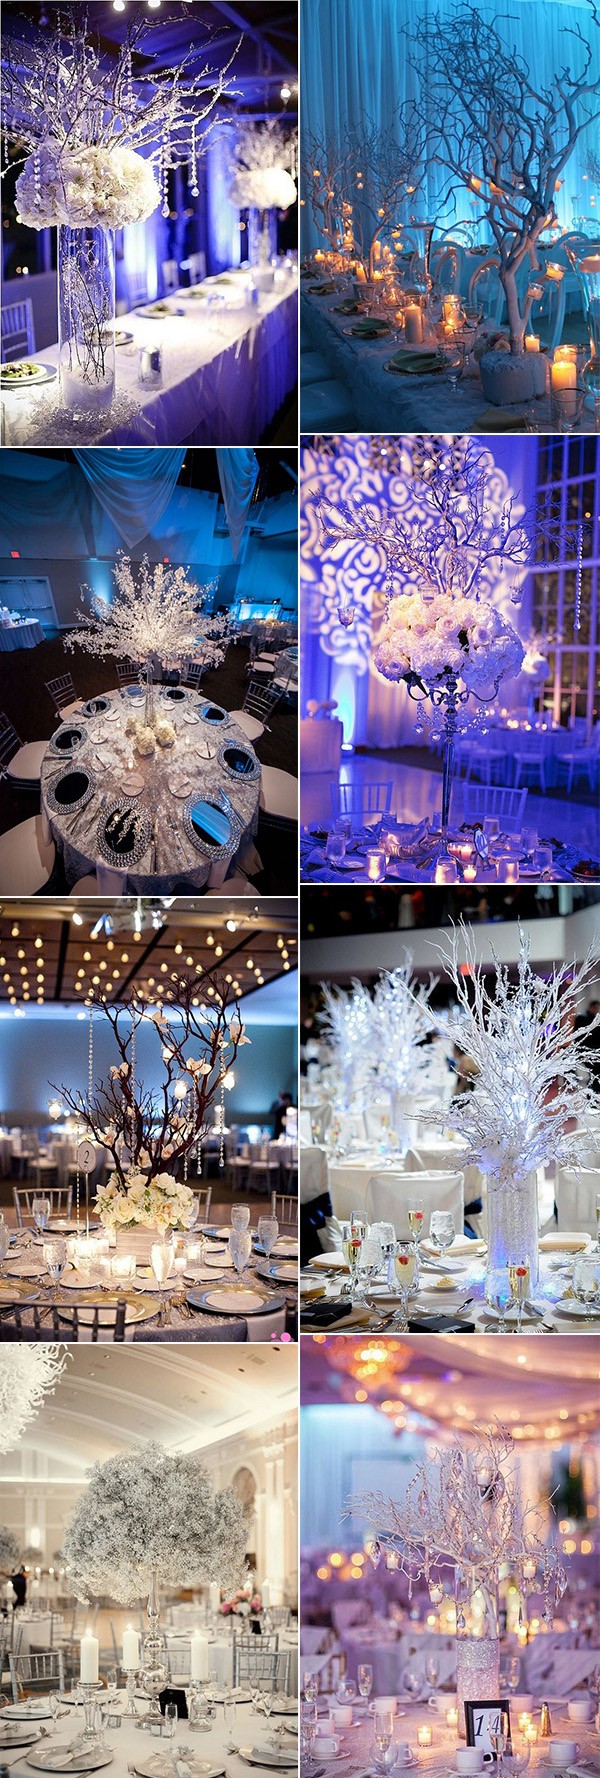 whimsical winter wonderland wedding centerpieces